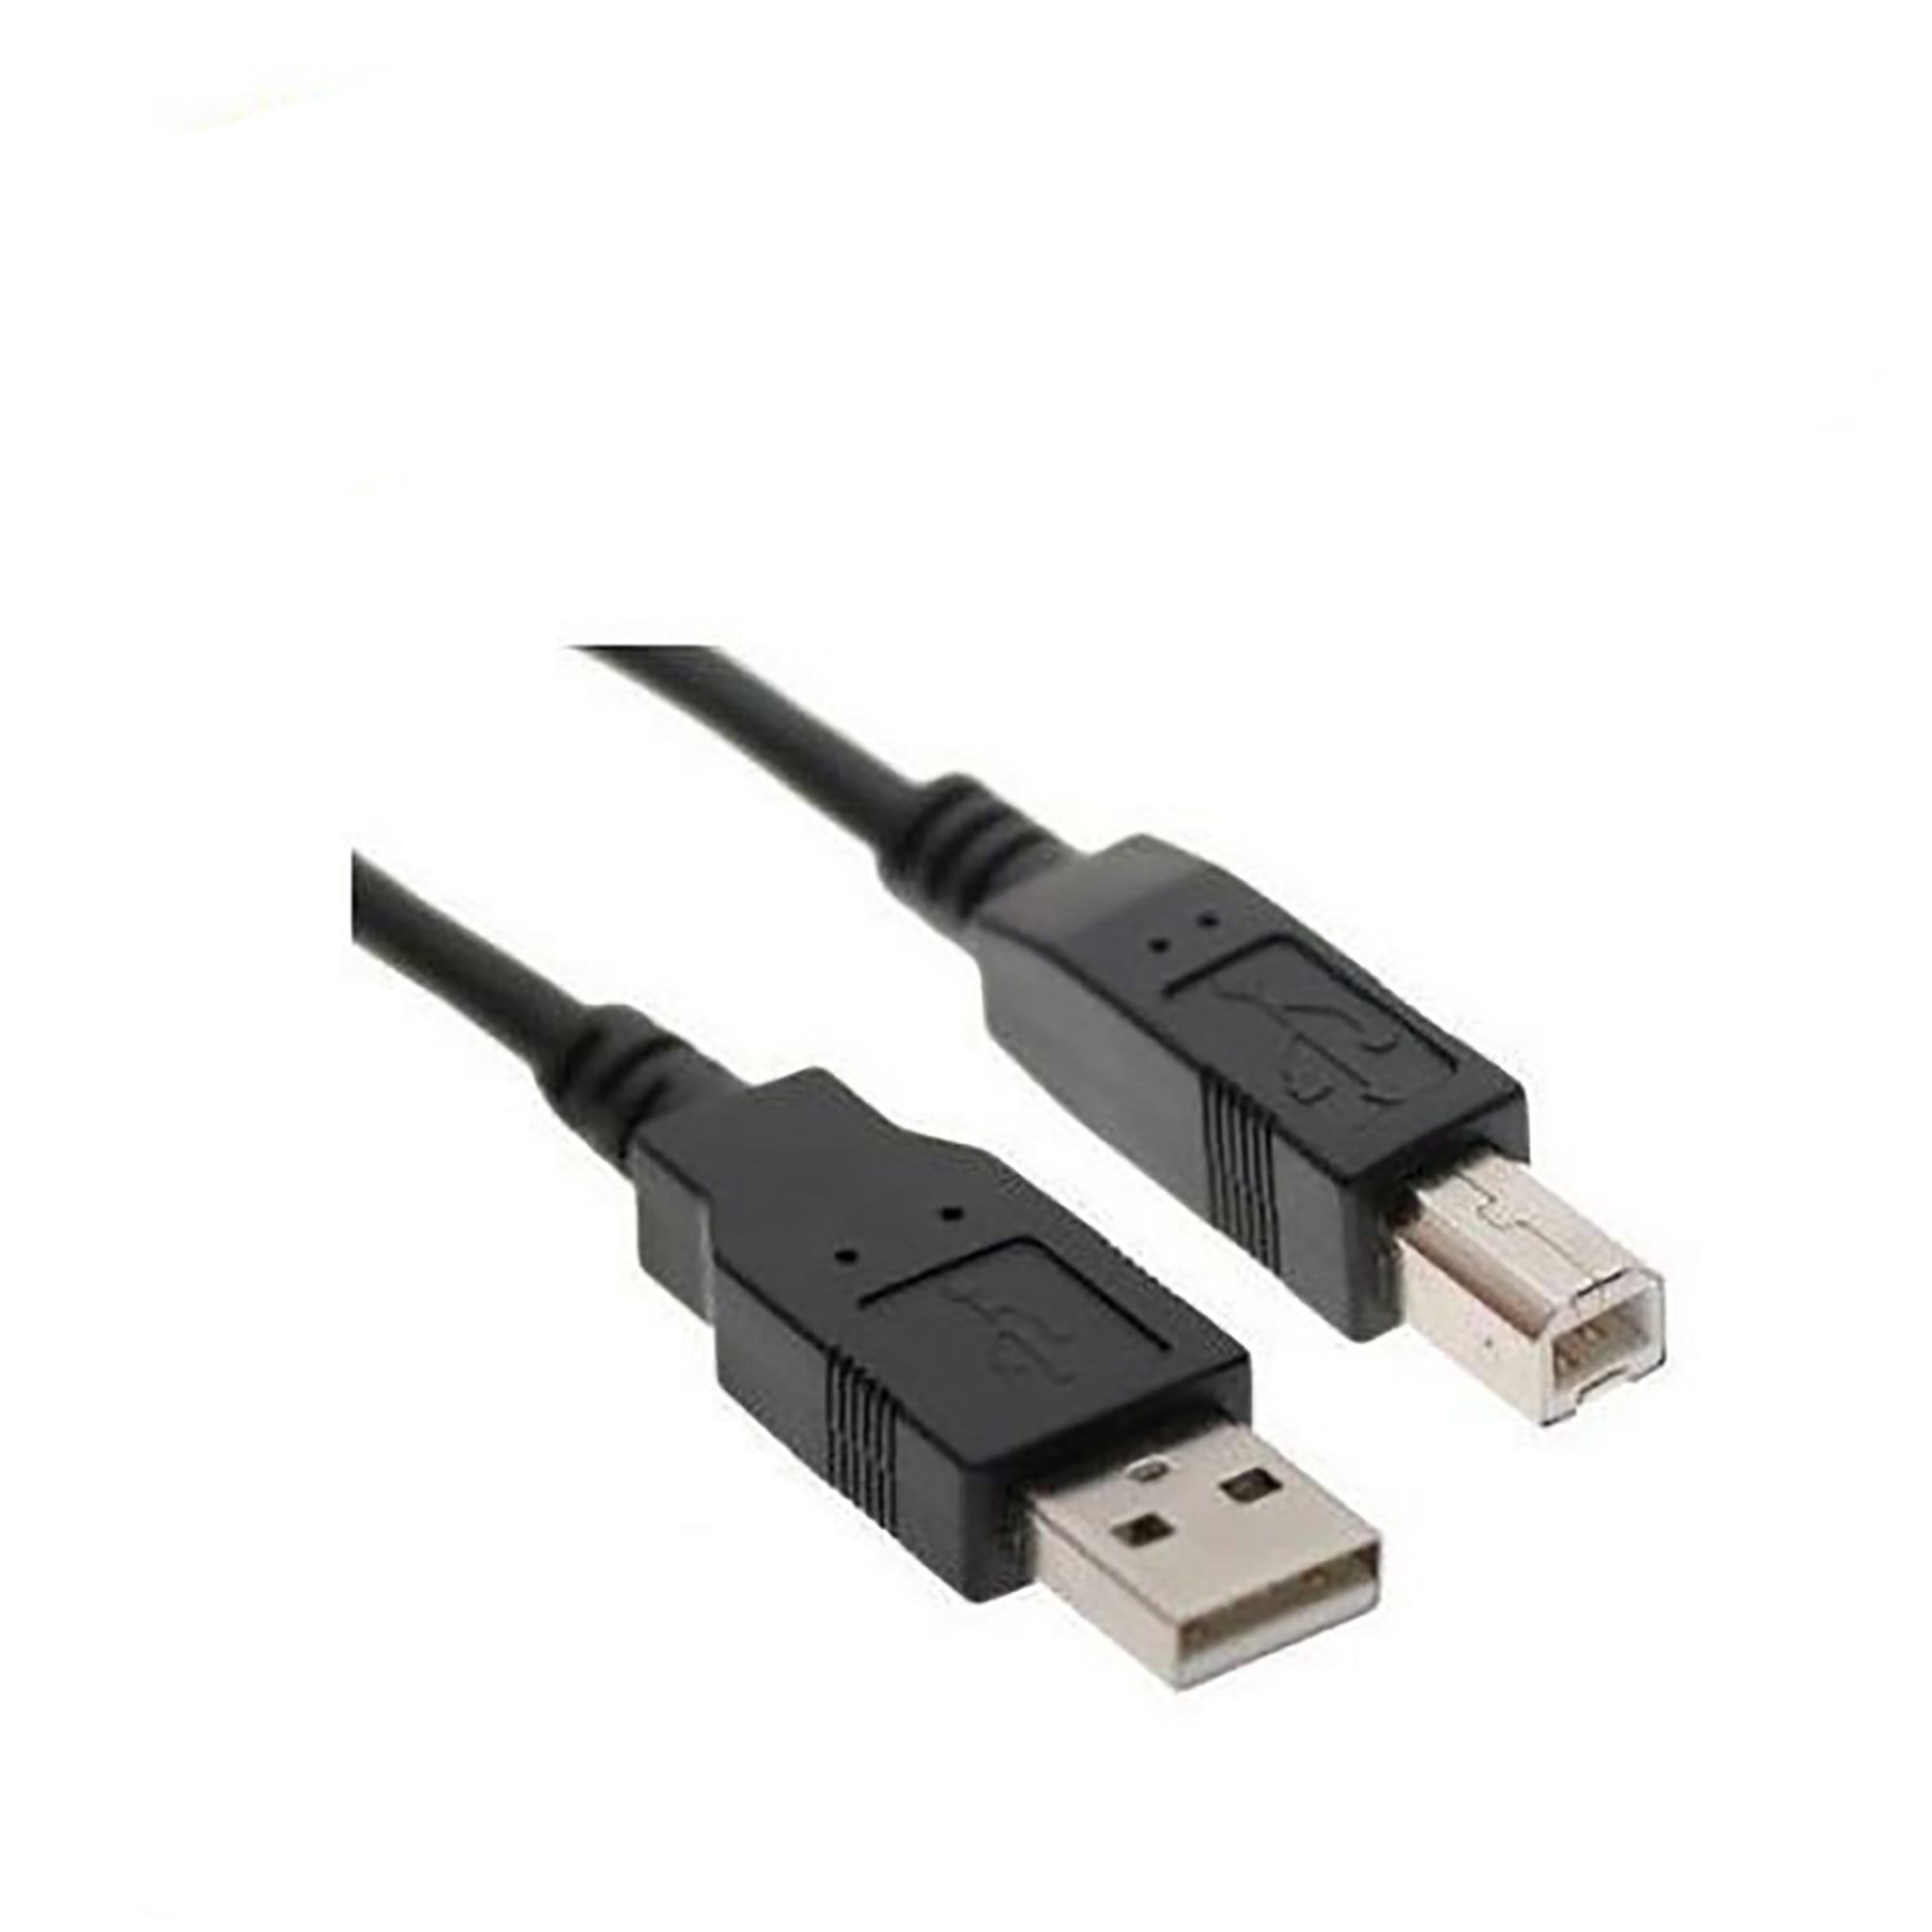 5METER USB Printer Cable Lead For Canon PIXMA MG5550 MG3250 MG3550 MG2450 MG4250 